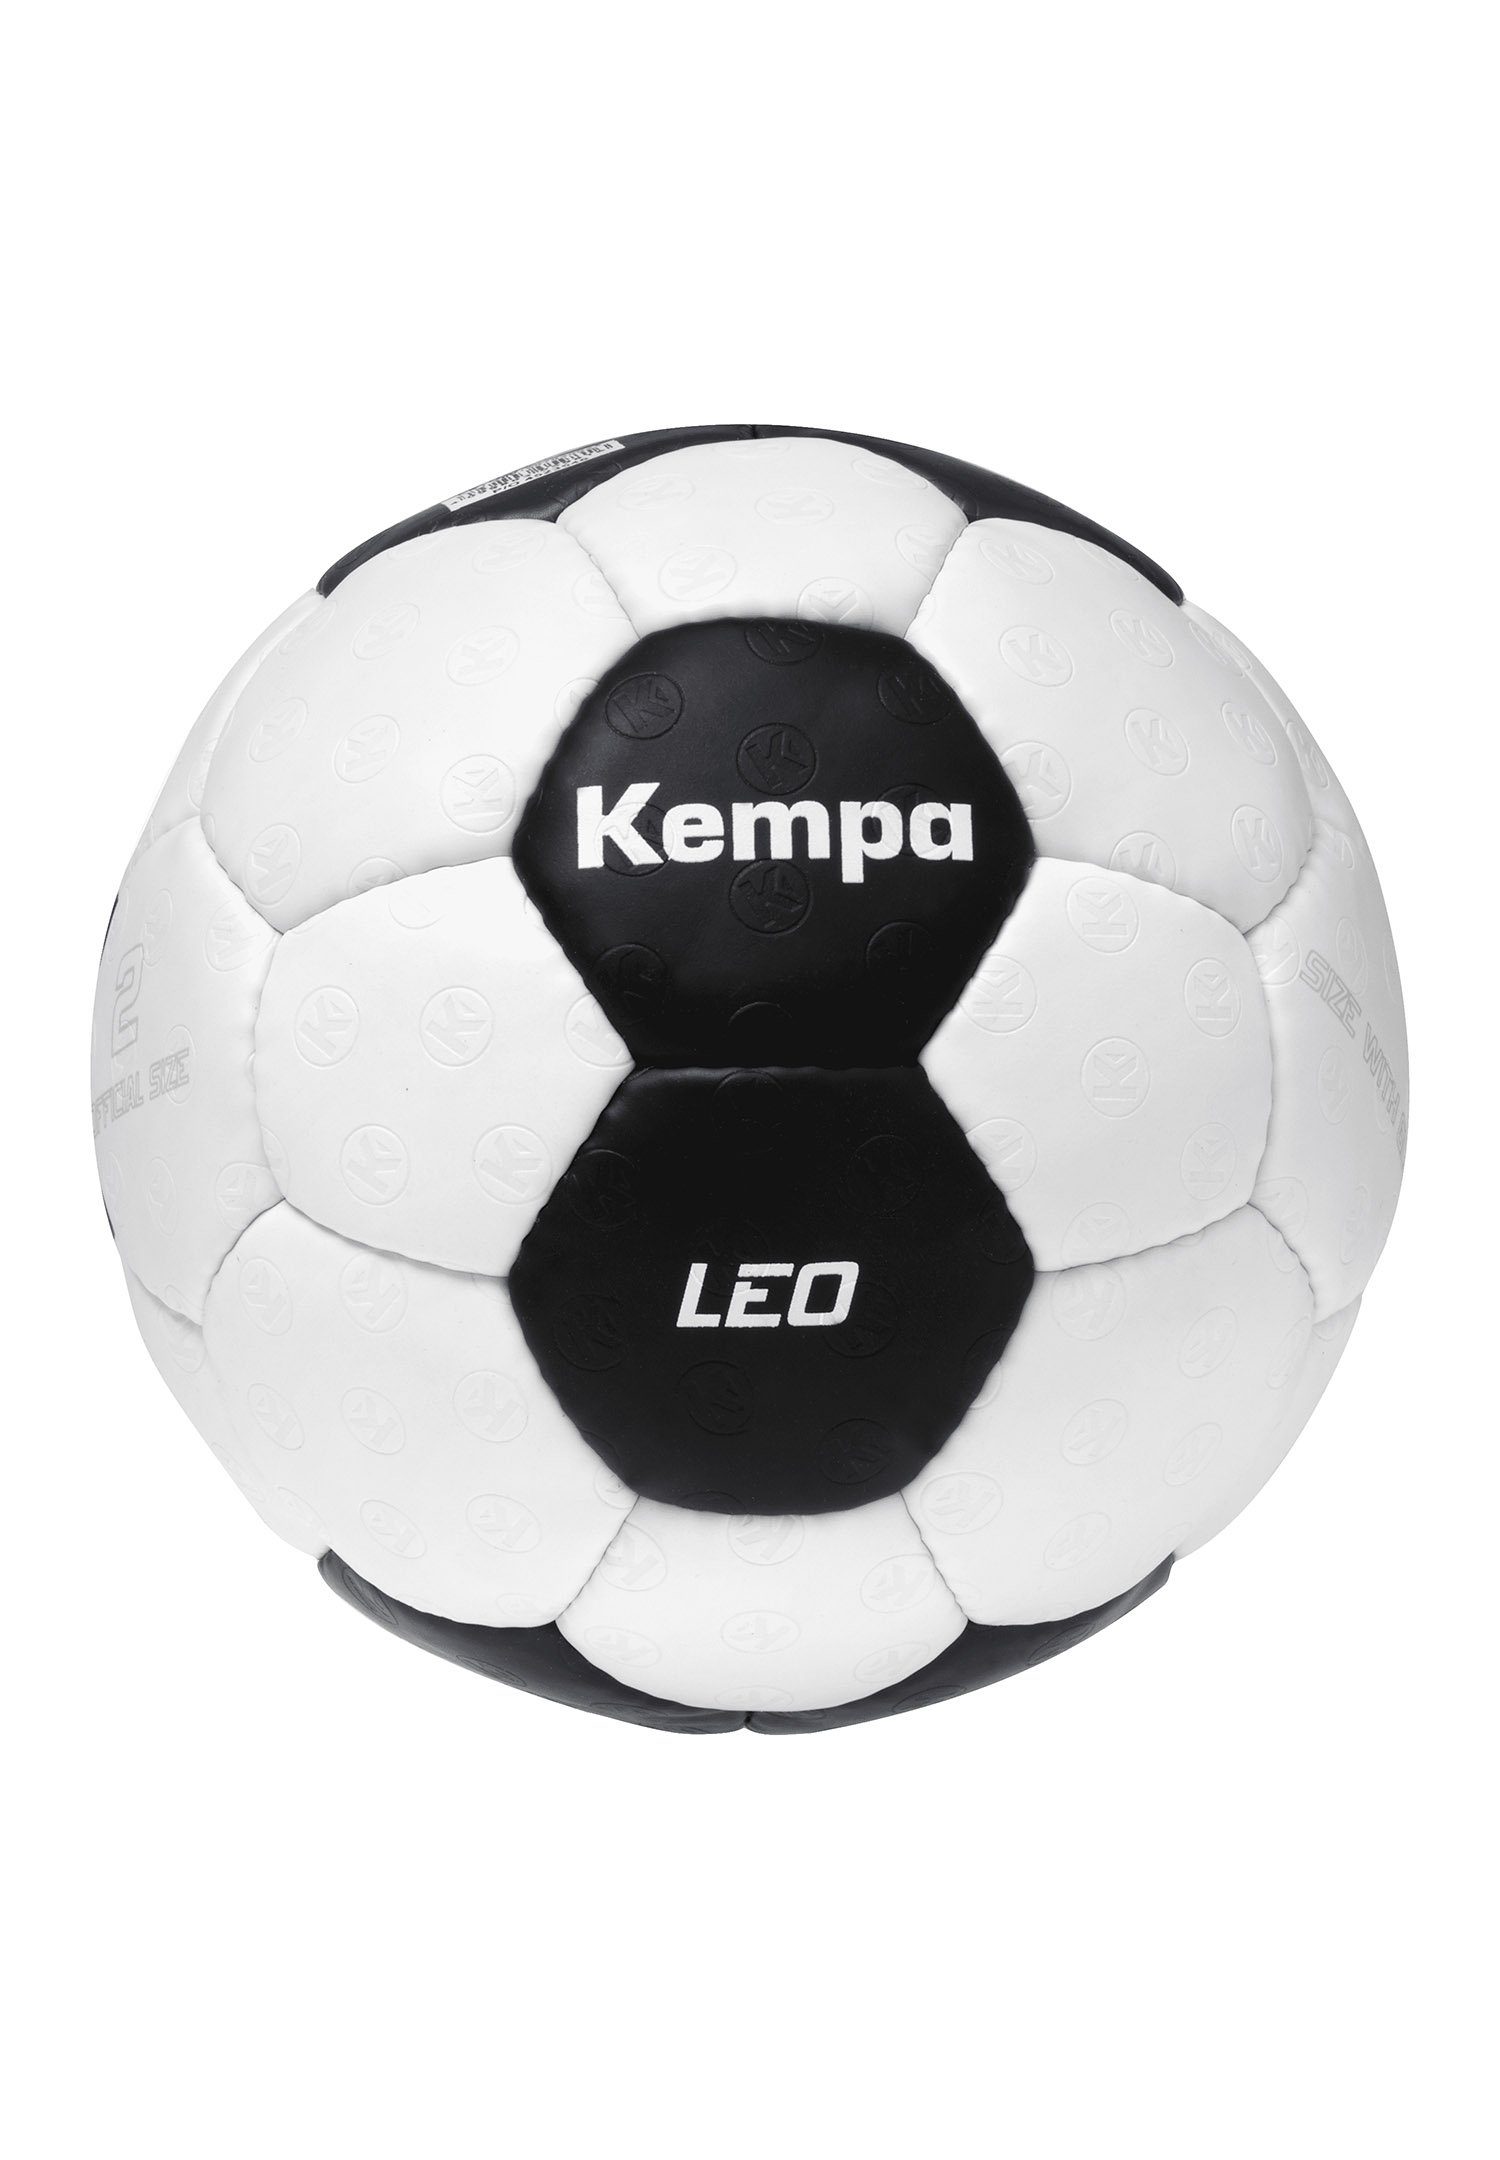 Kempa Changer Leo Game Fußball